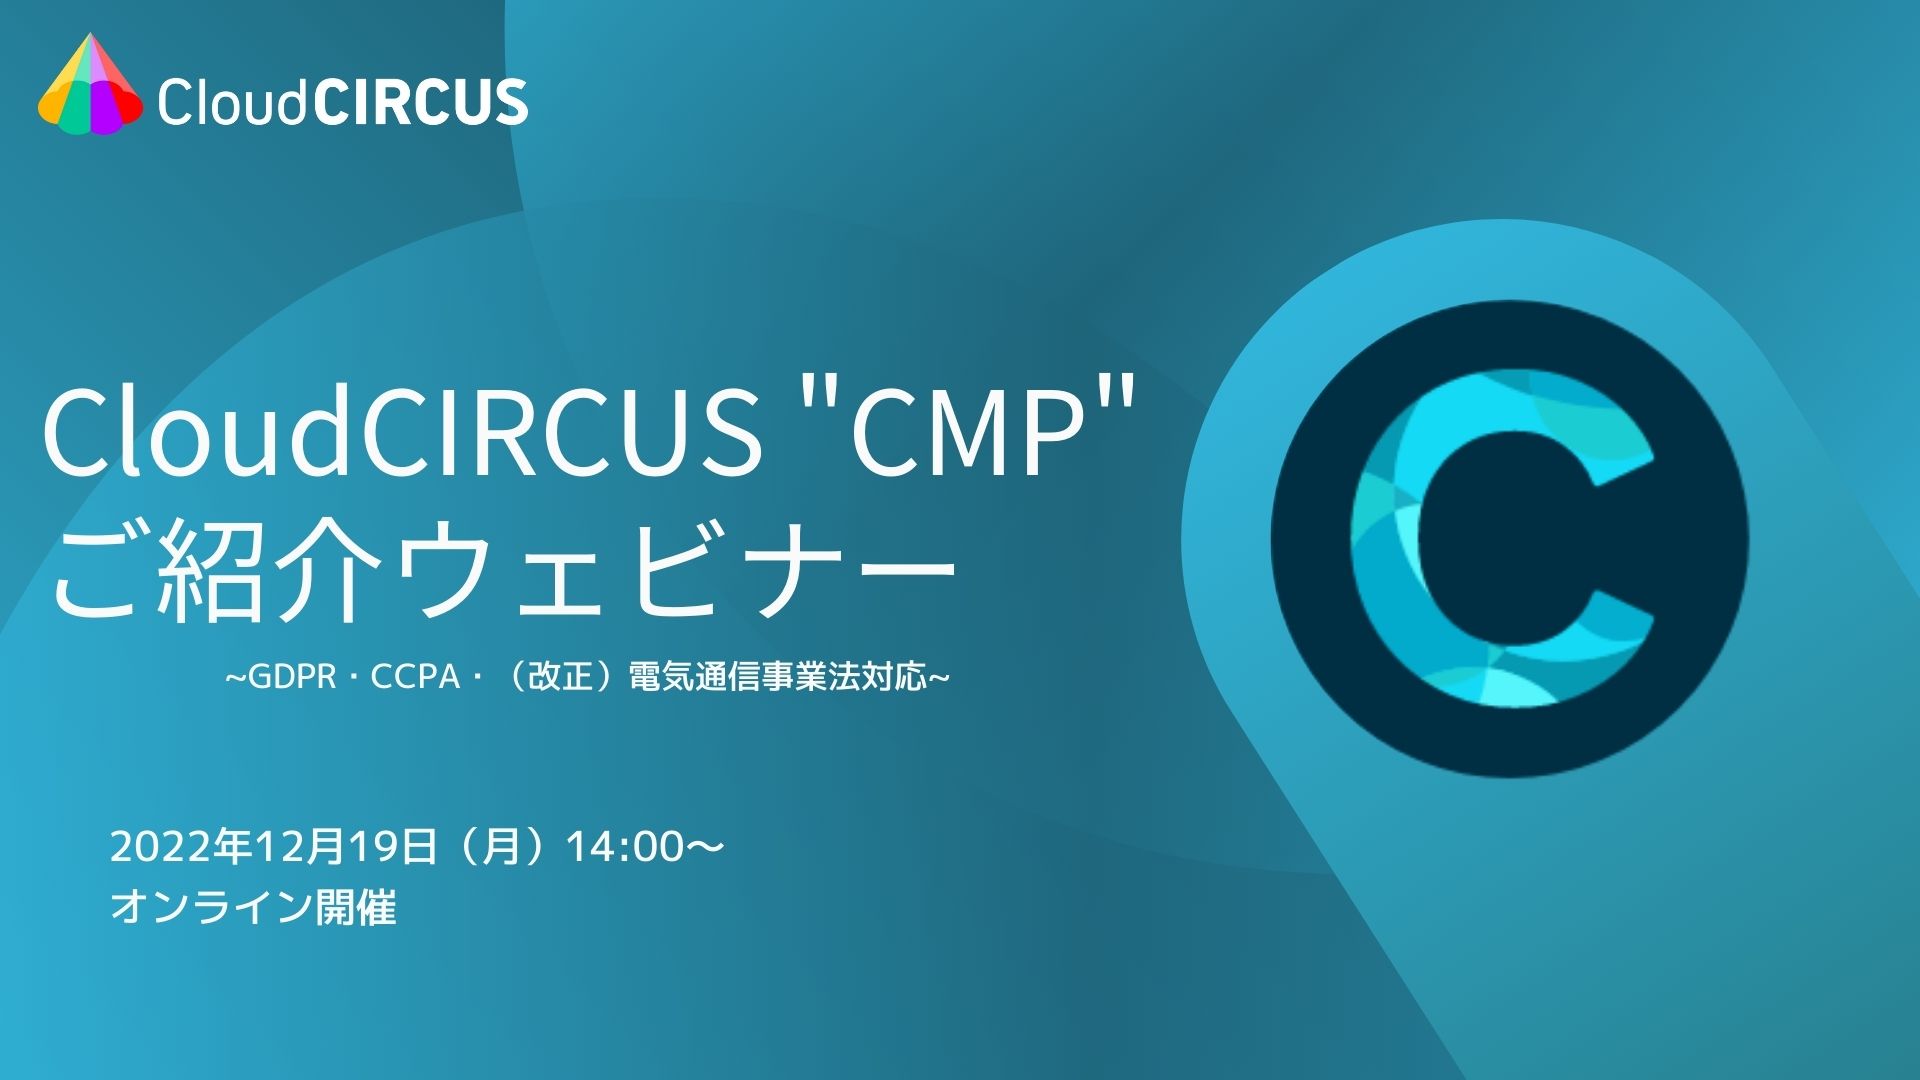 【12/19(月)】Cookie規制対応の同意管理ツール「CloudCIRCUS CMP」ご紹介ウェブセミナー